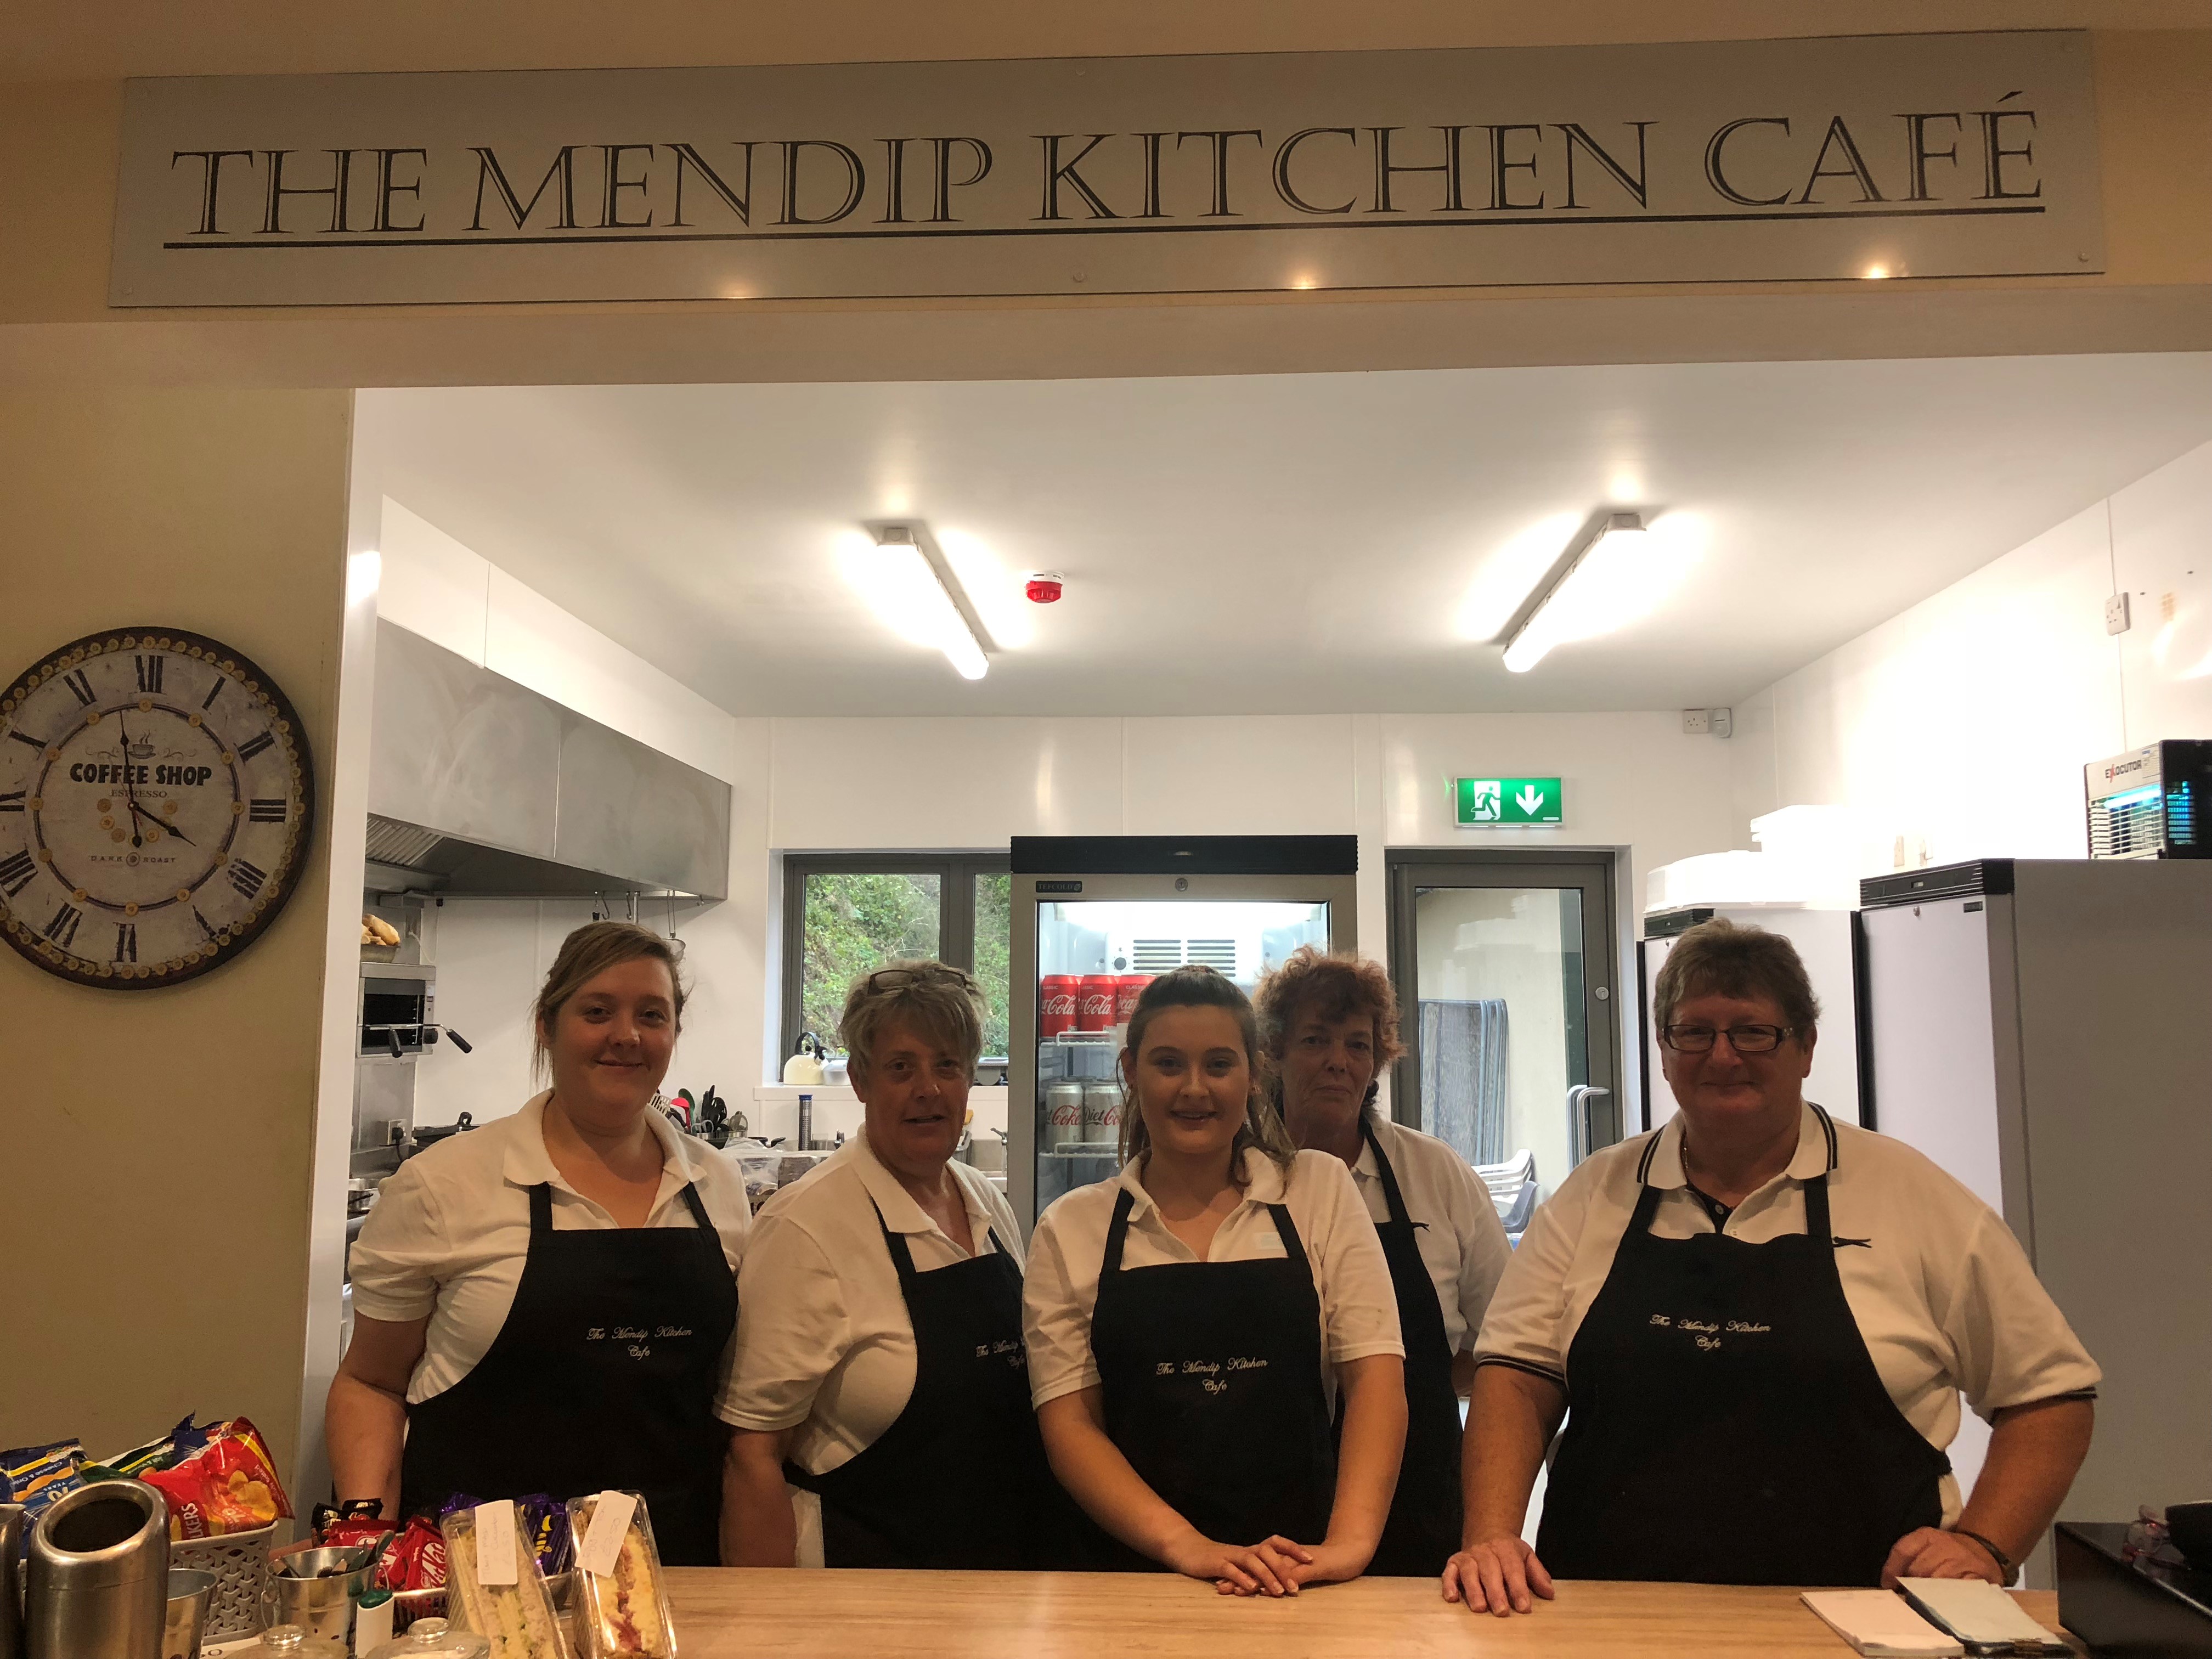 The Mendip Kitchen Café